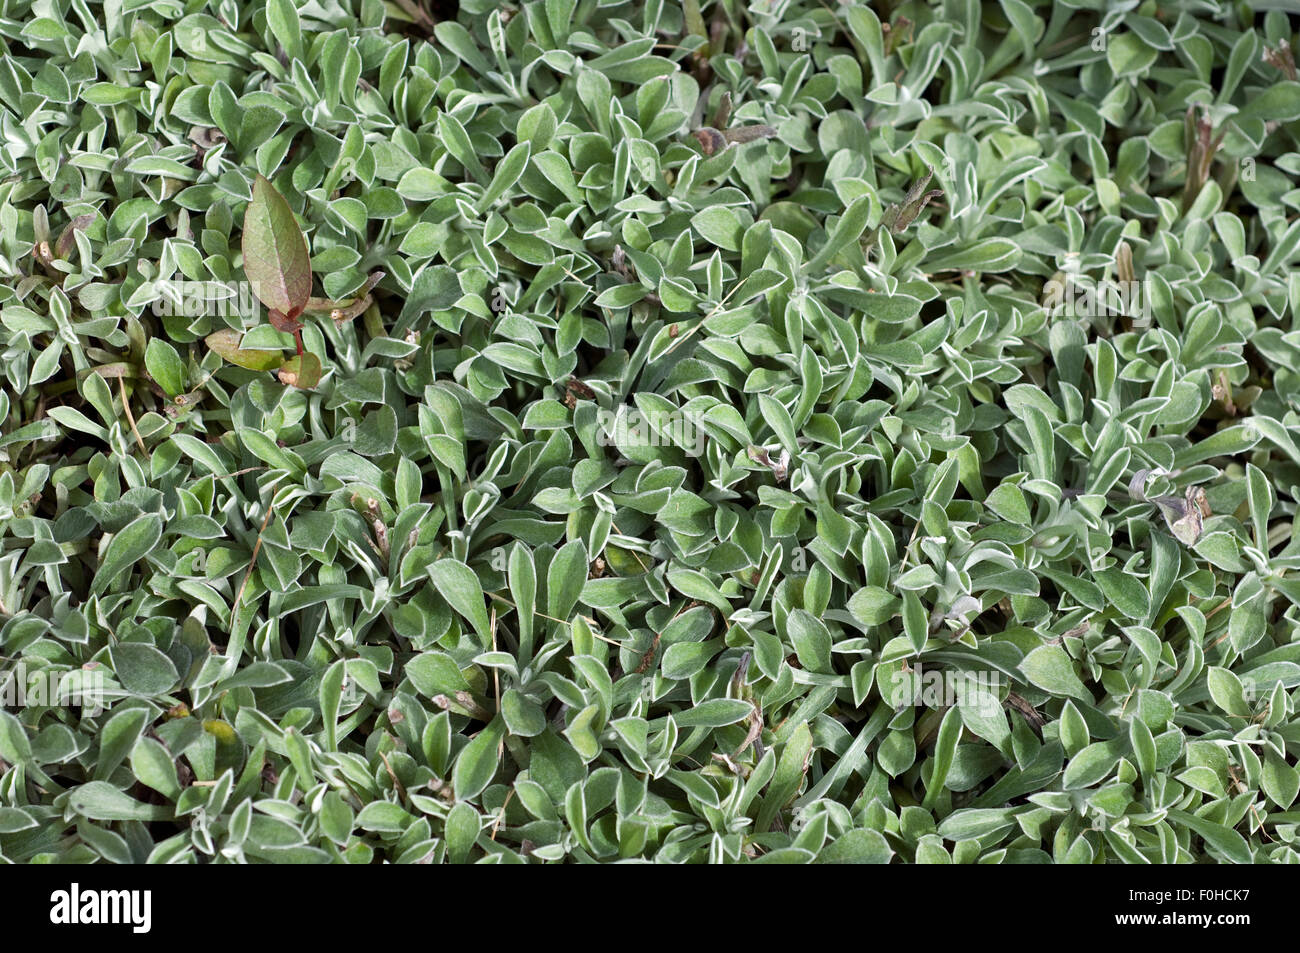 katzenpfoetchen, Antennaria dioica, Stock Photo